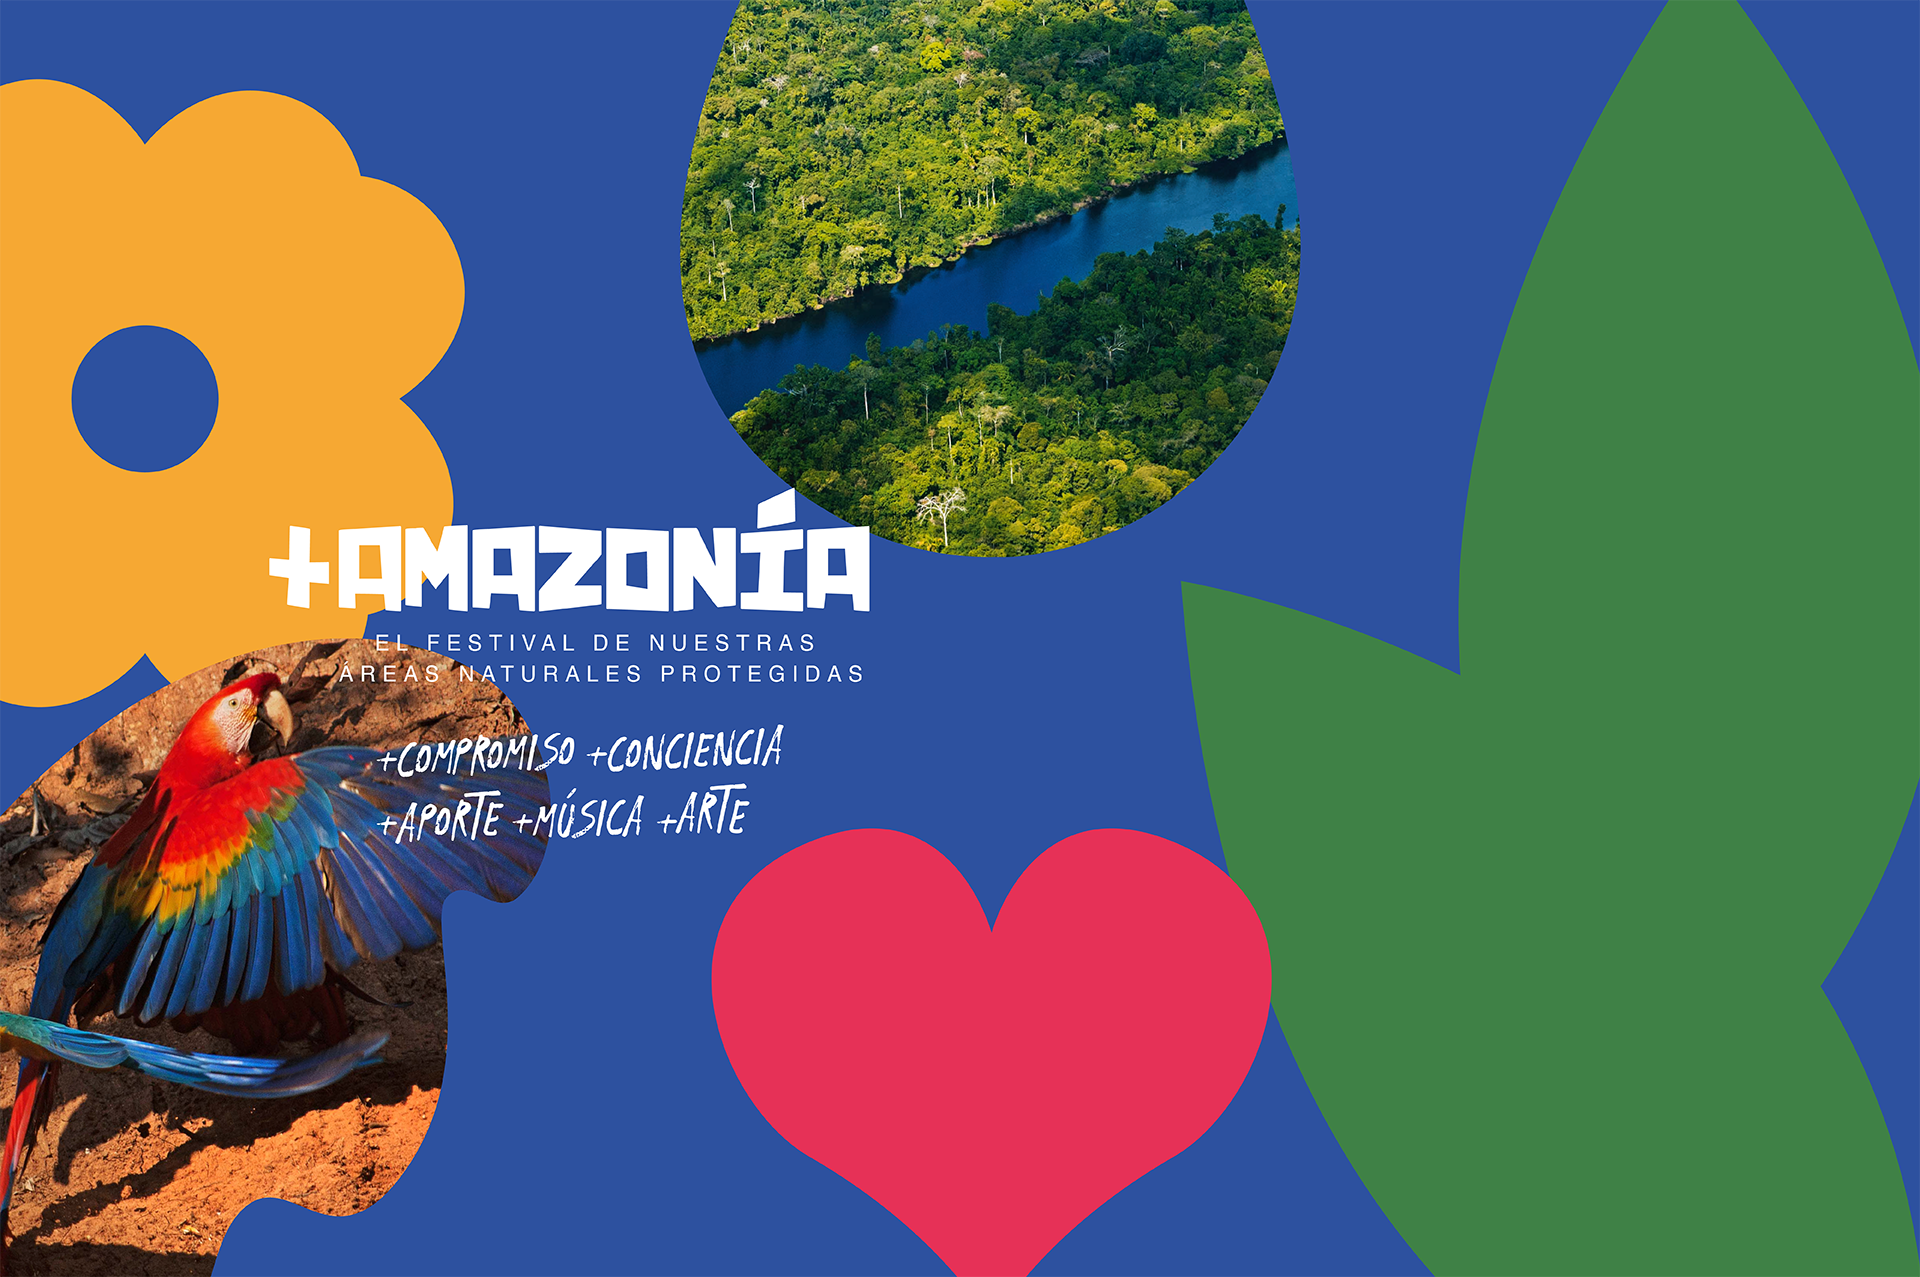 +Amazonía El Festival de nuestras áreas naturales protegidas